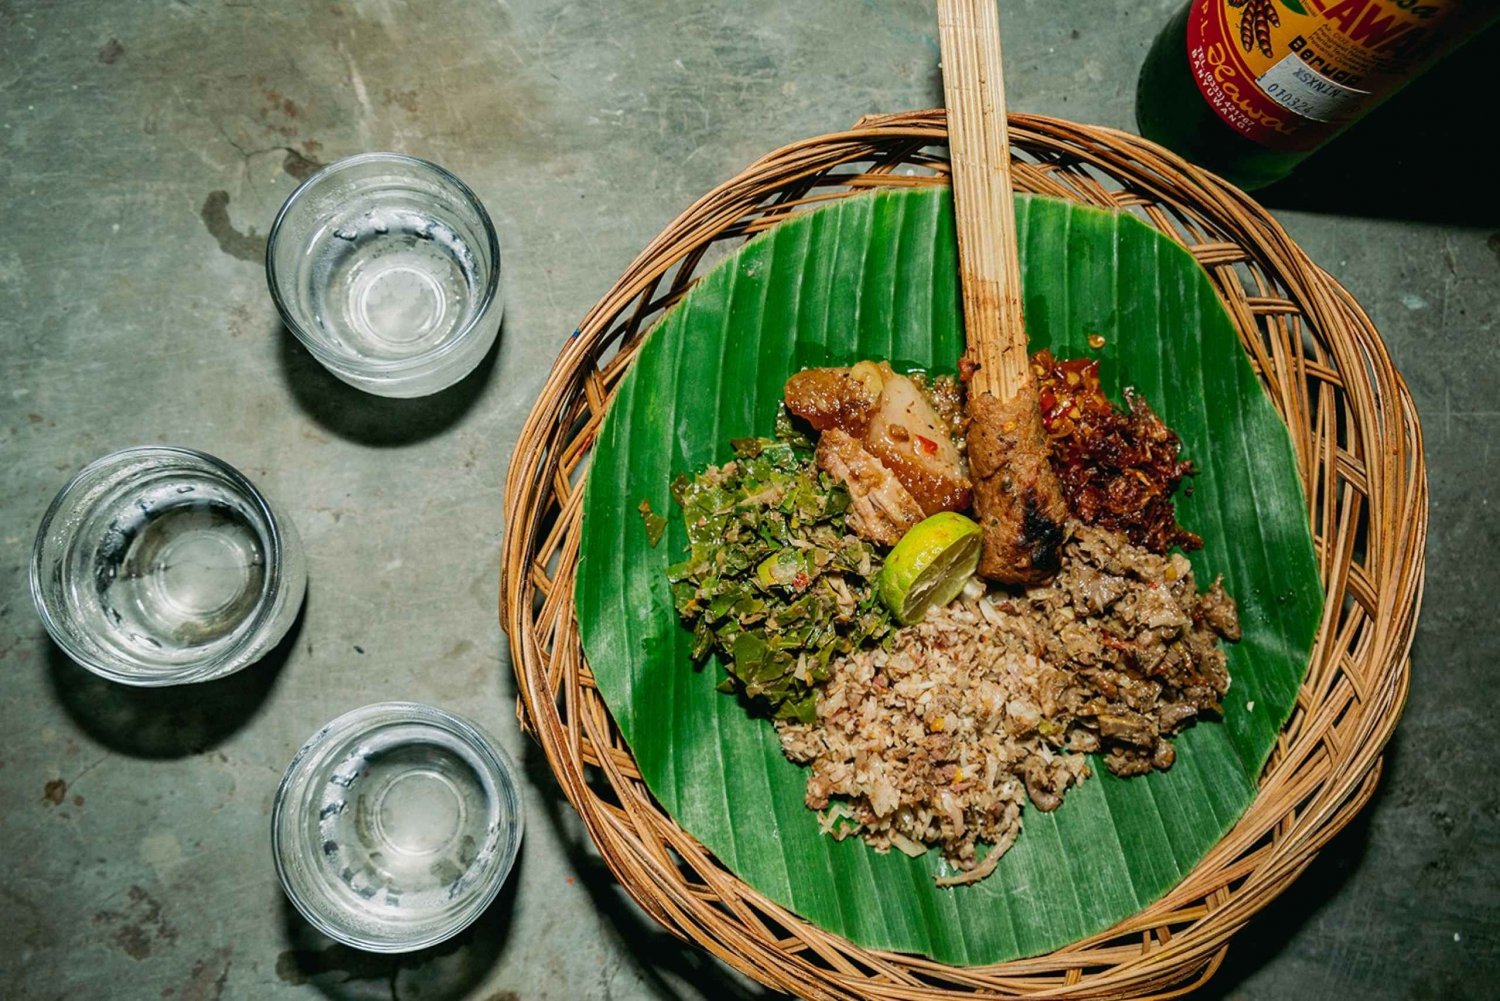 Bali Bites Food Tour met 15+ proeverijen